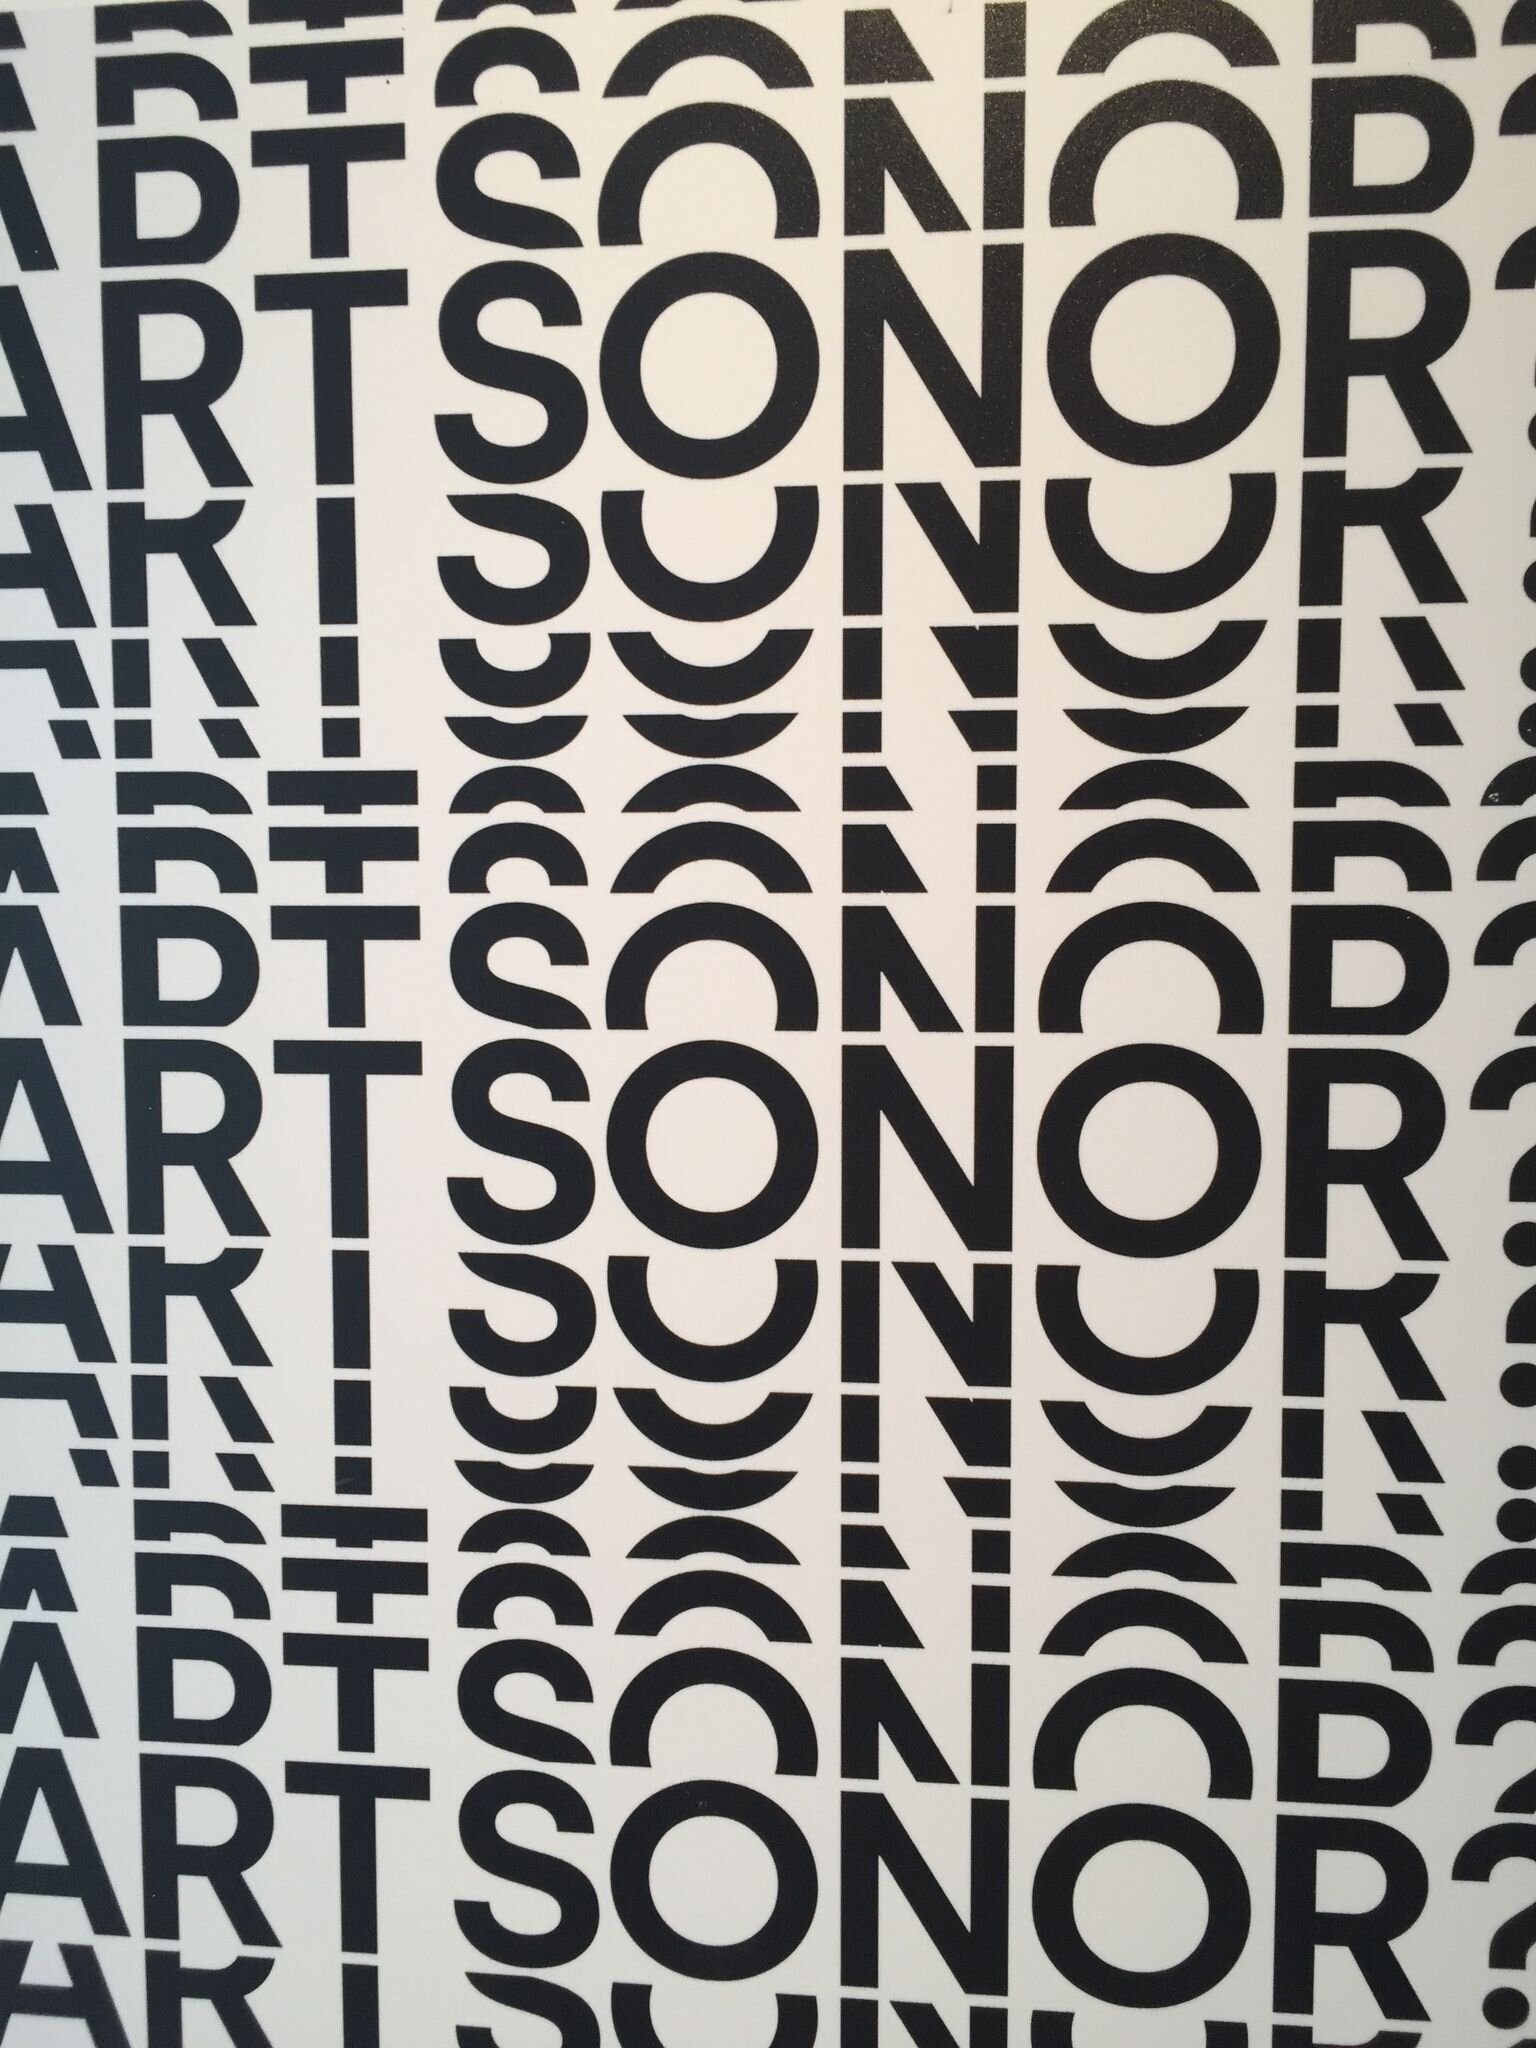 Art Sonor exhibition - Fundació Joan Miró